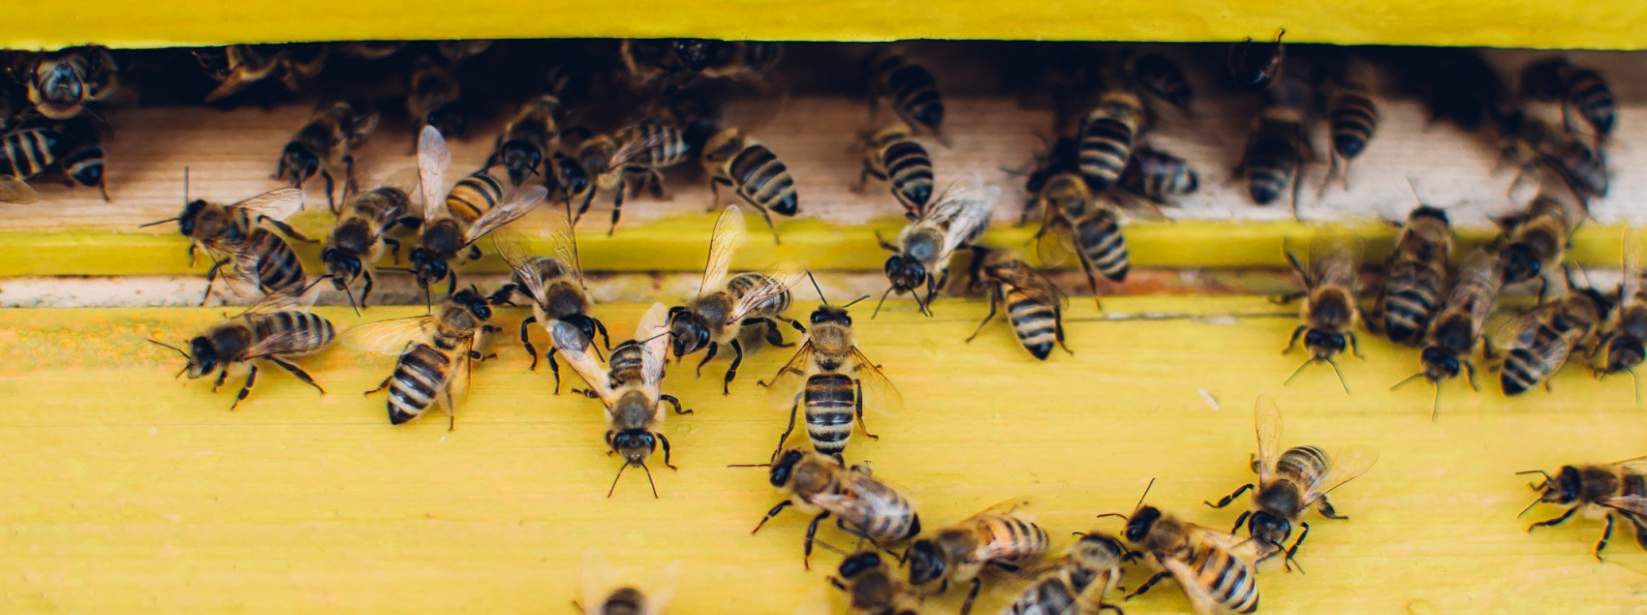 City bee hive